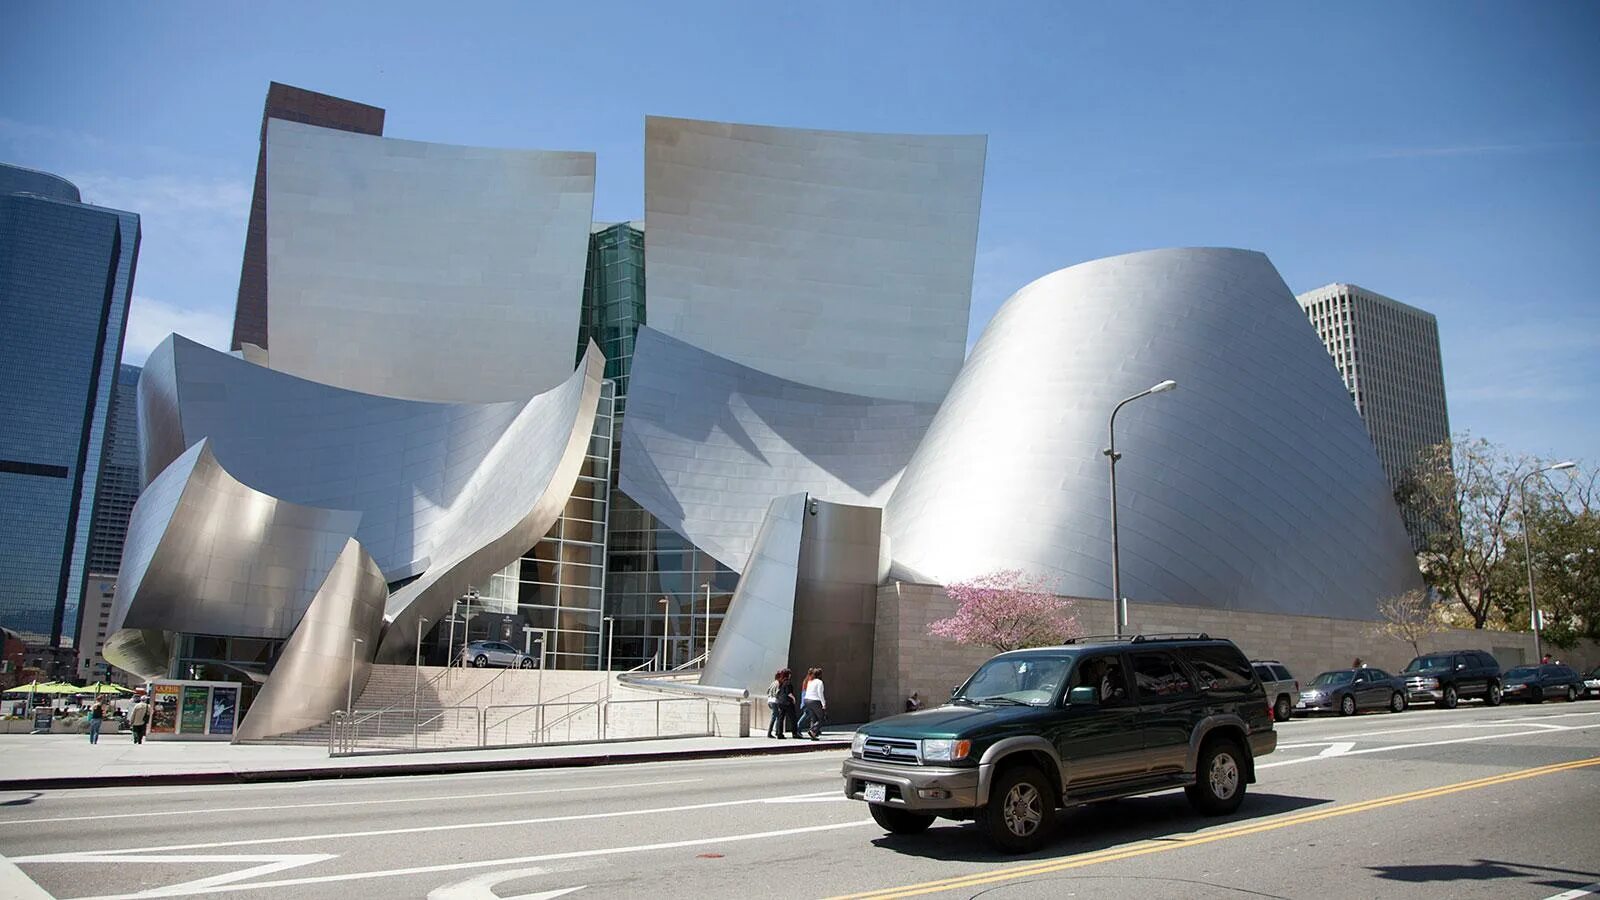 Фрэнк Гери музей Уолта Диснея. Фрэнк Гери концертный зал. Концертный зал Уолта Диснея в Лос-Анджелесе, США. Здание концертного зала имени Уолта Диснея в Лос-Анджелесе.